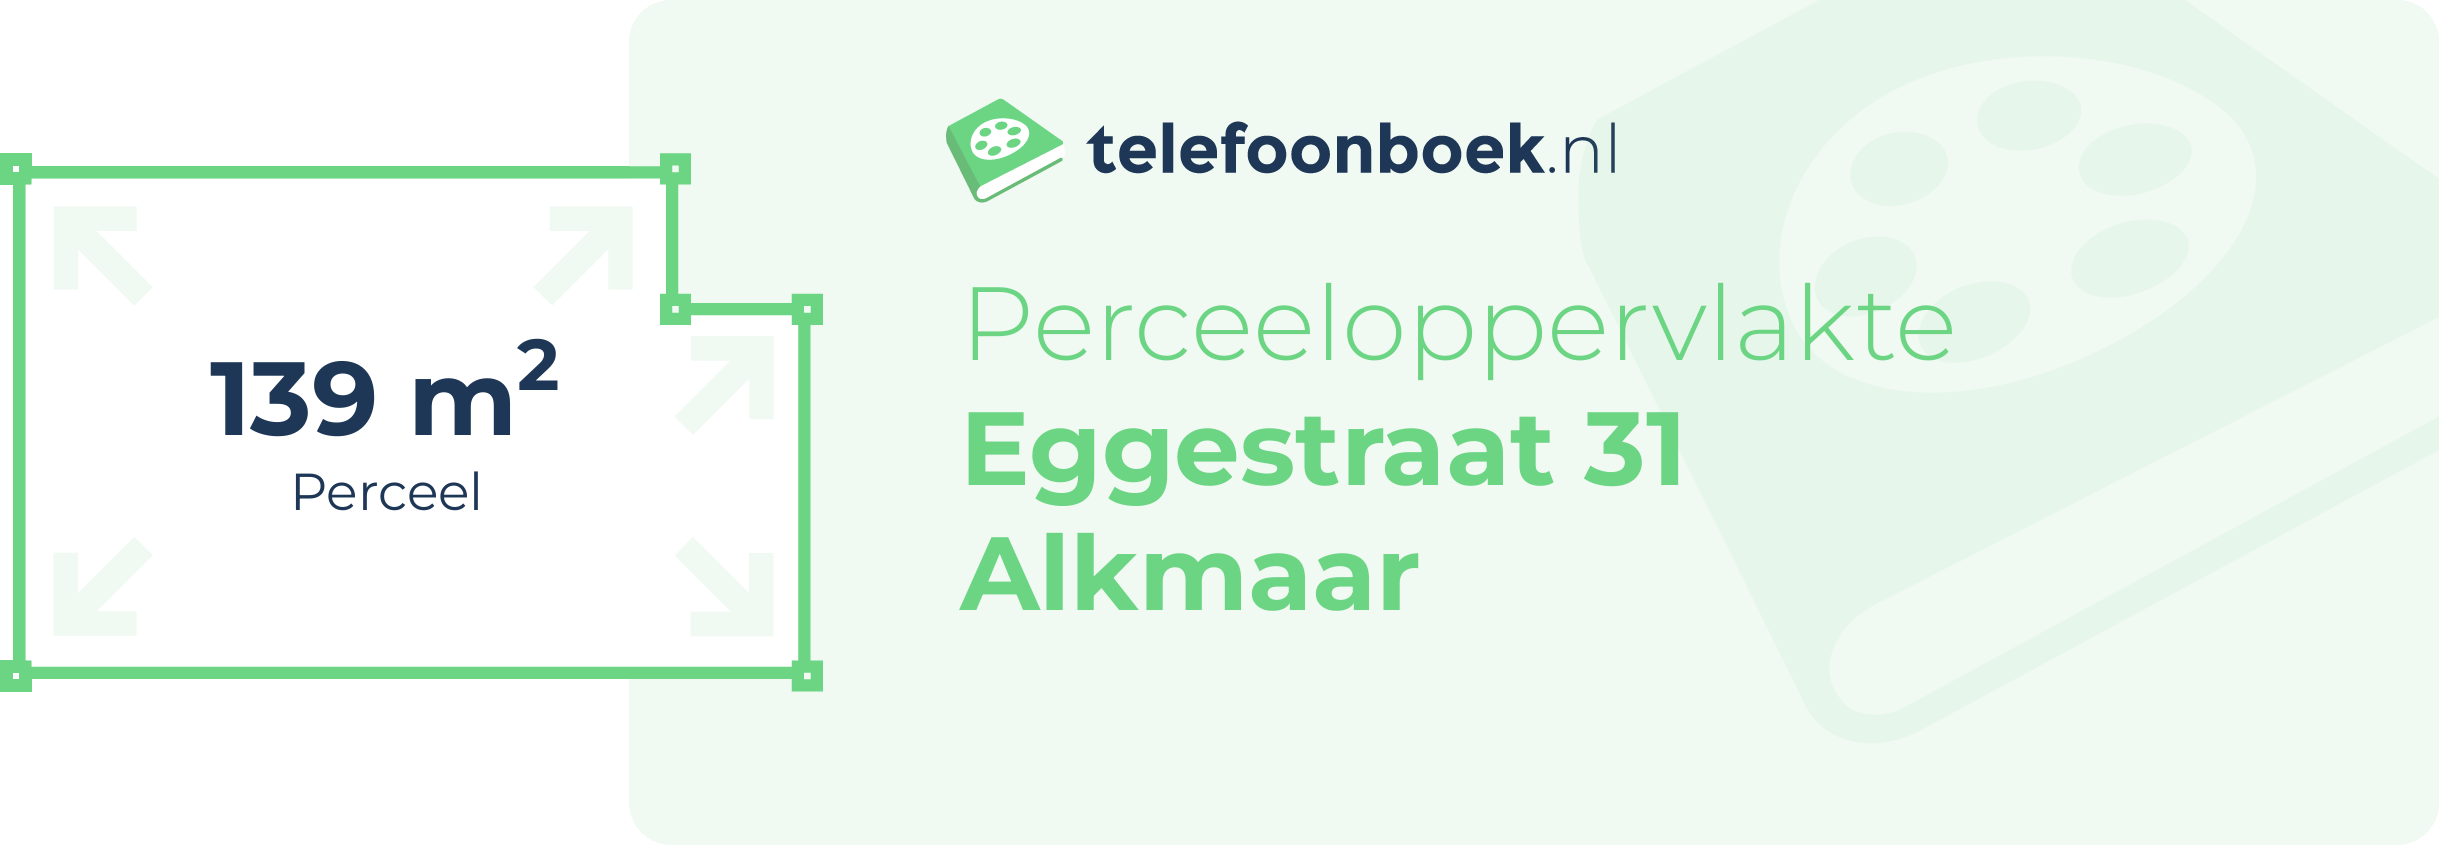 Perceeloppervlakte Eggestraat 31 Alkmaar